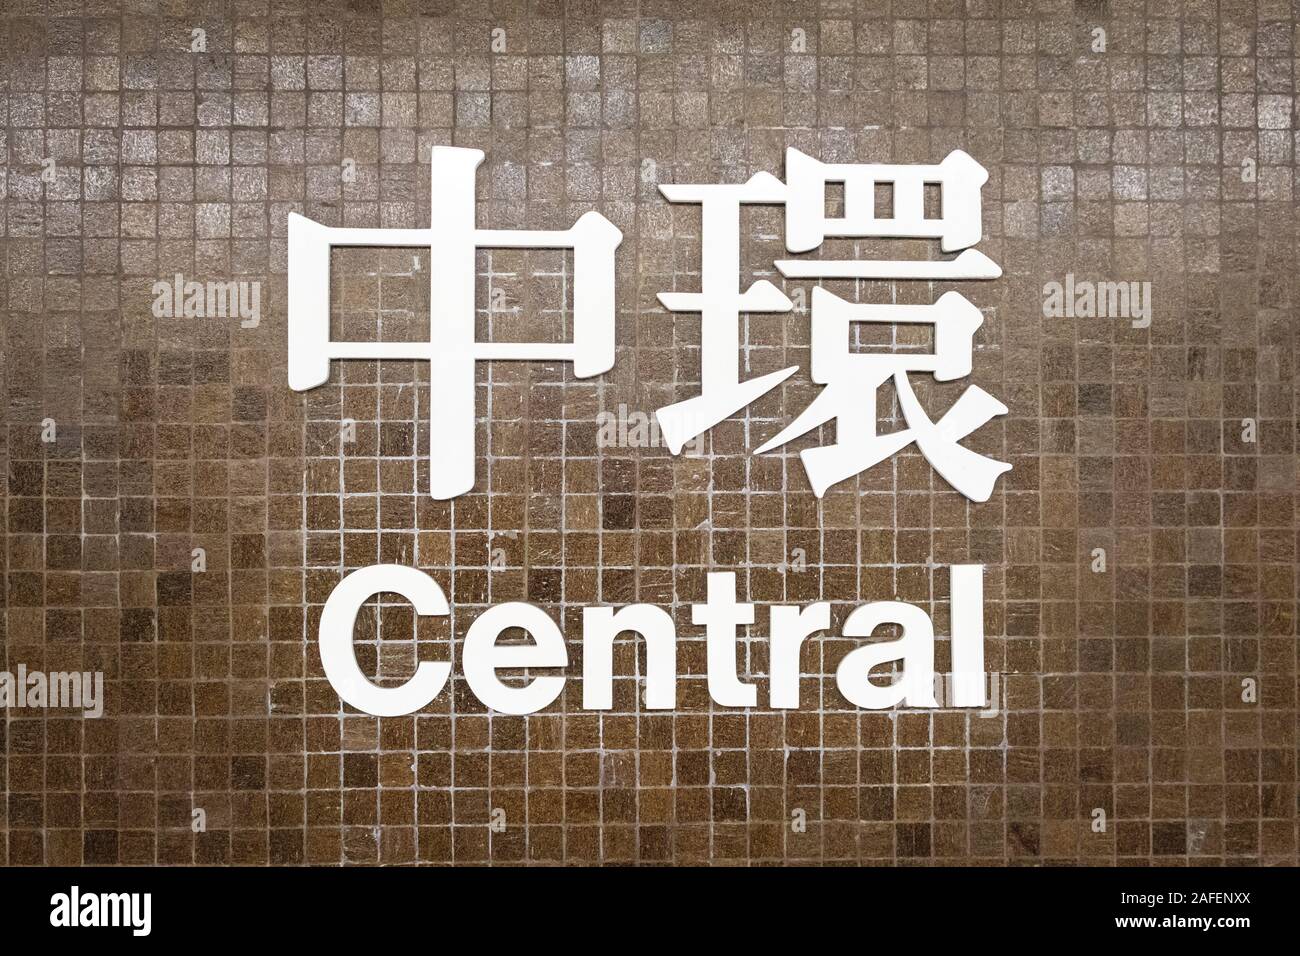 Hongkong, China - November, 2019: CENTRAL station name sign of MTR station / subway train station of HongKong Stock Photo